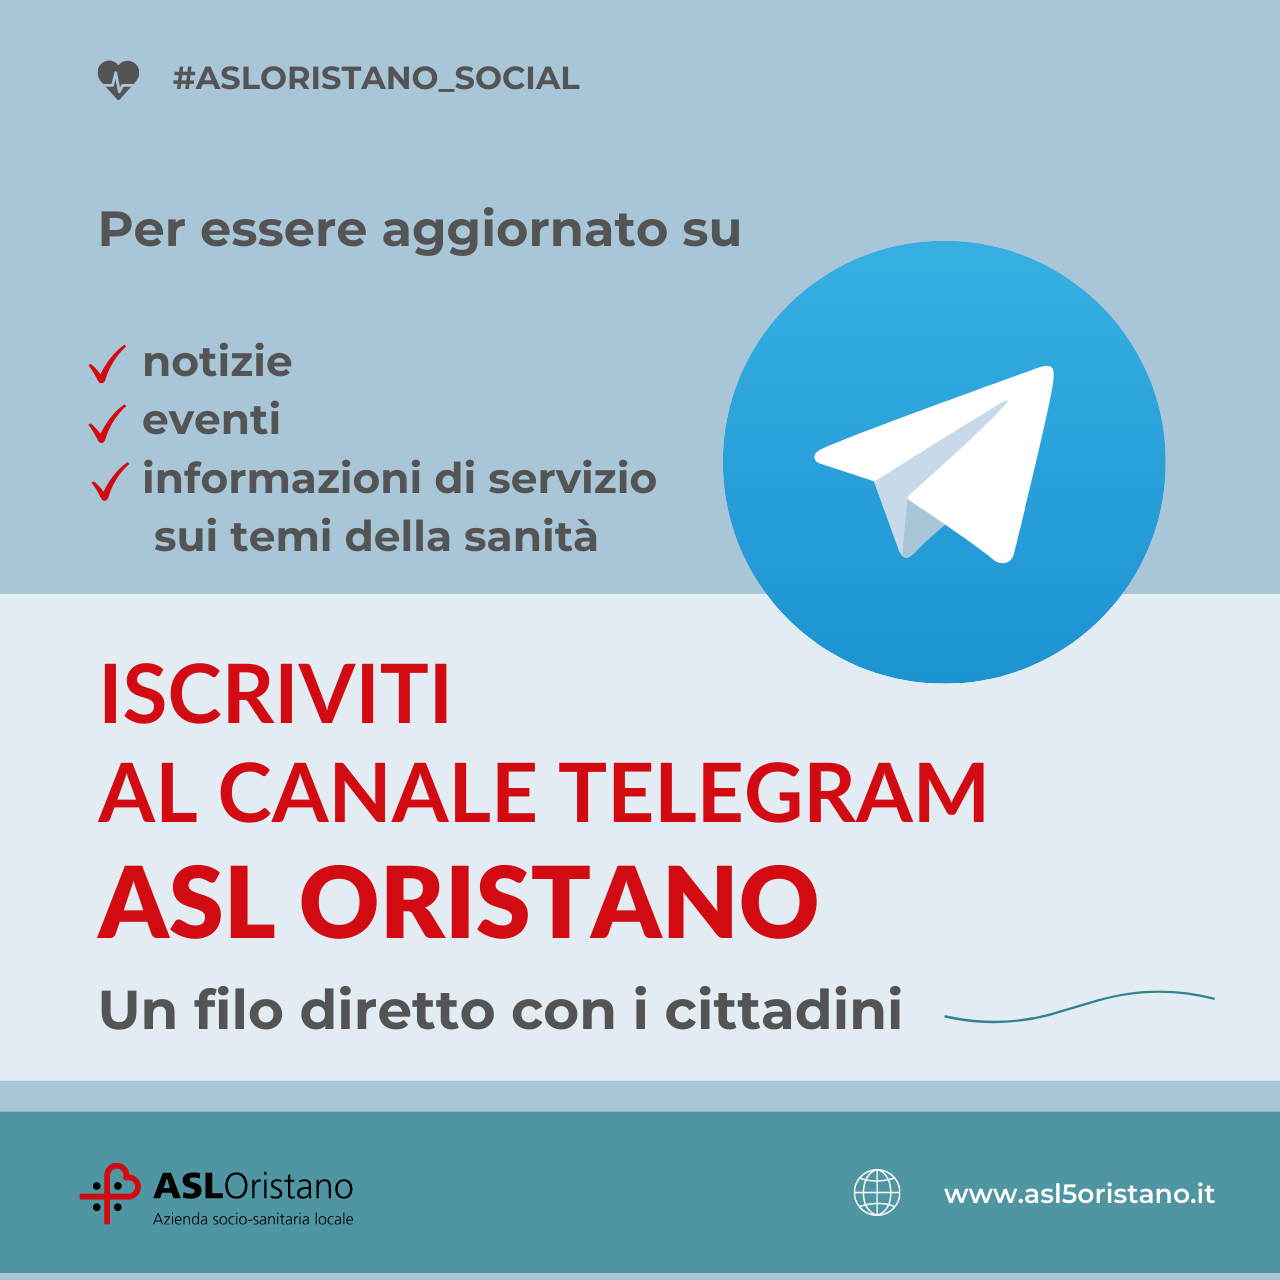 Attivo il canale Telegram ASL Oristano: filo diretto con i cittadini